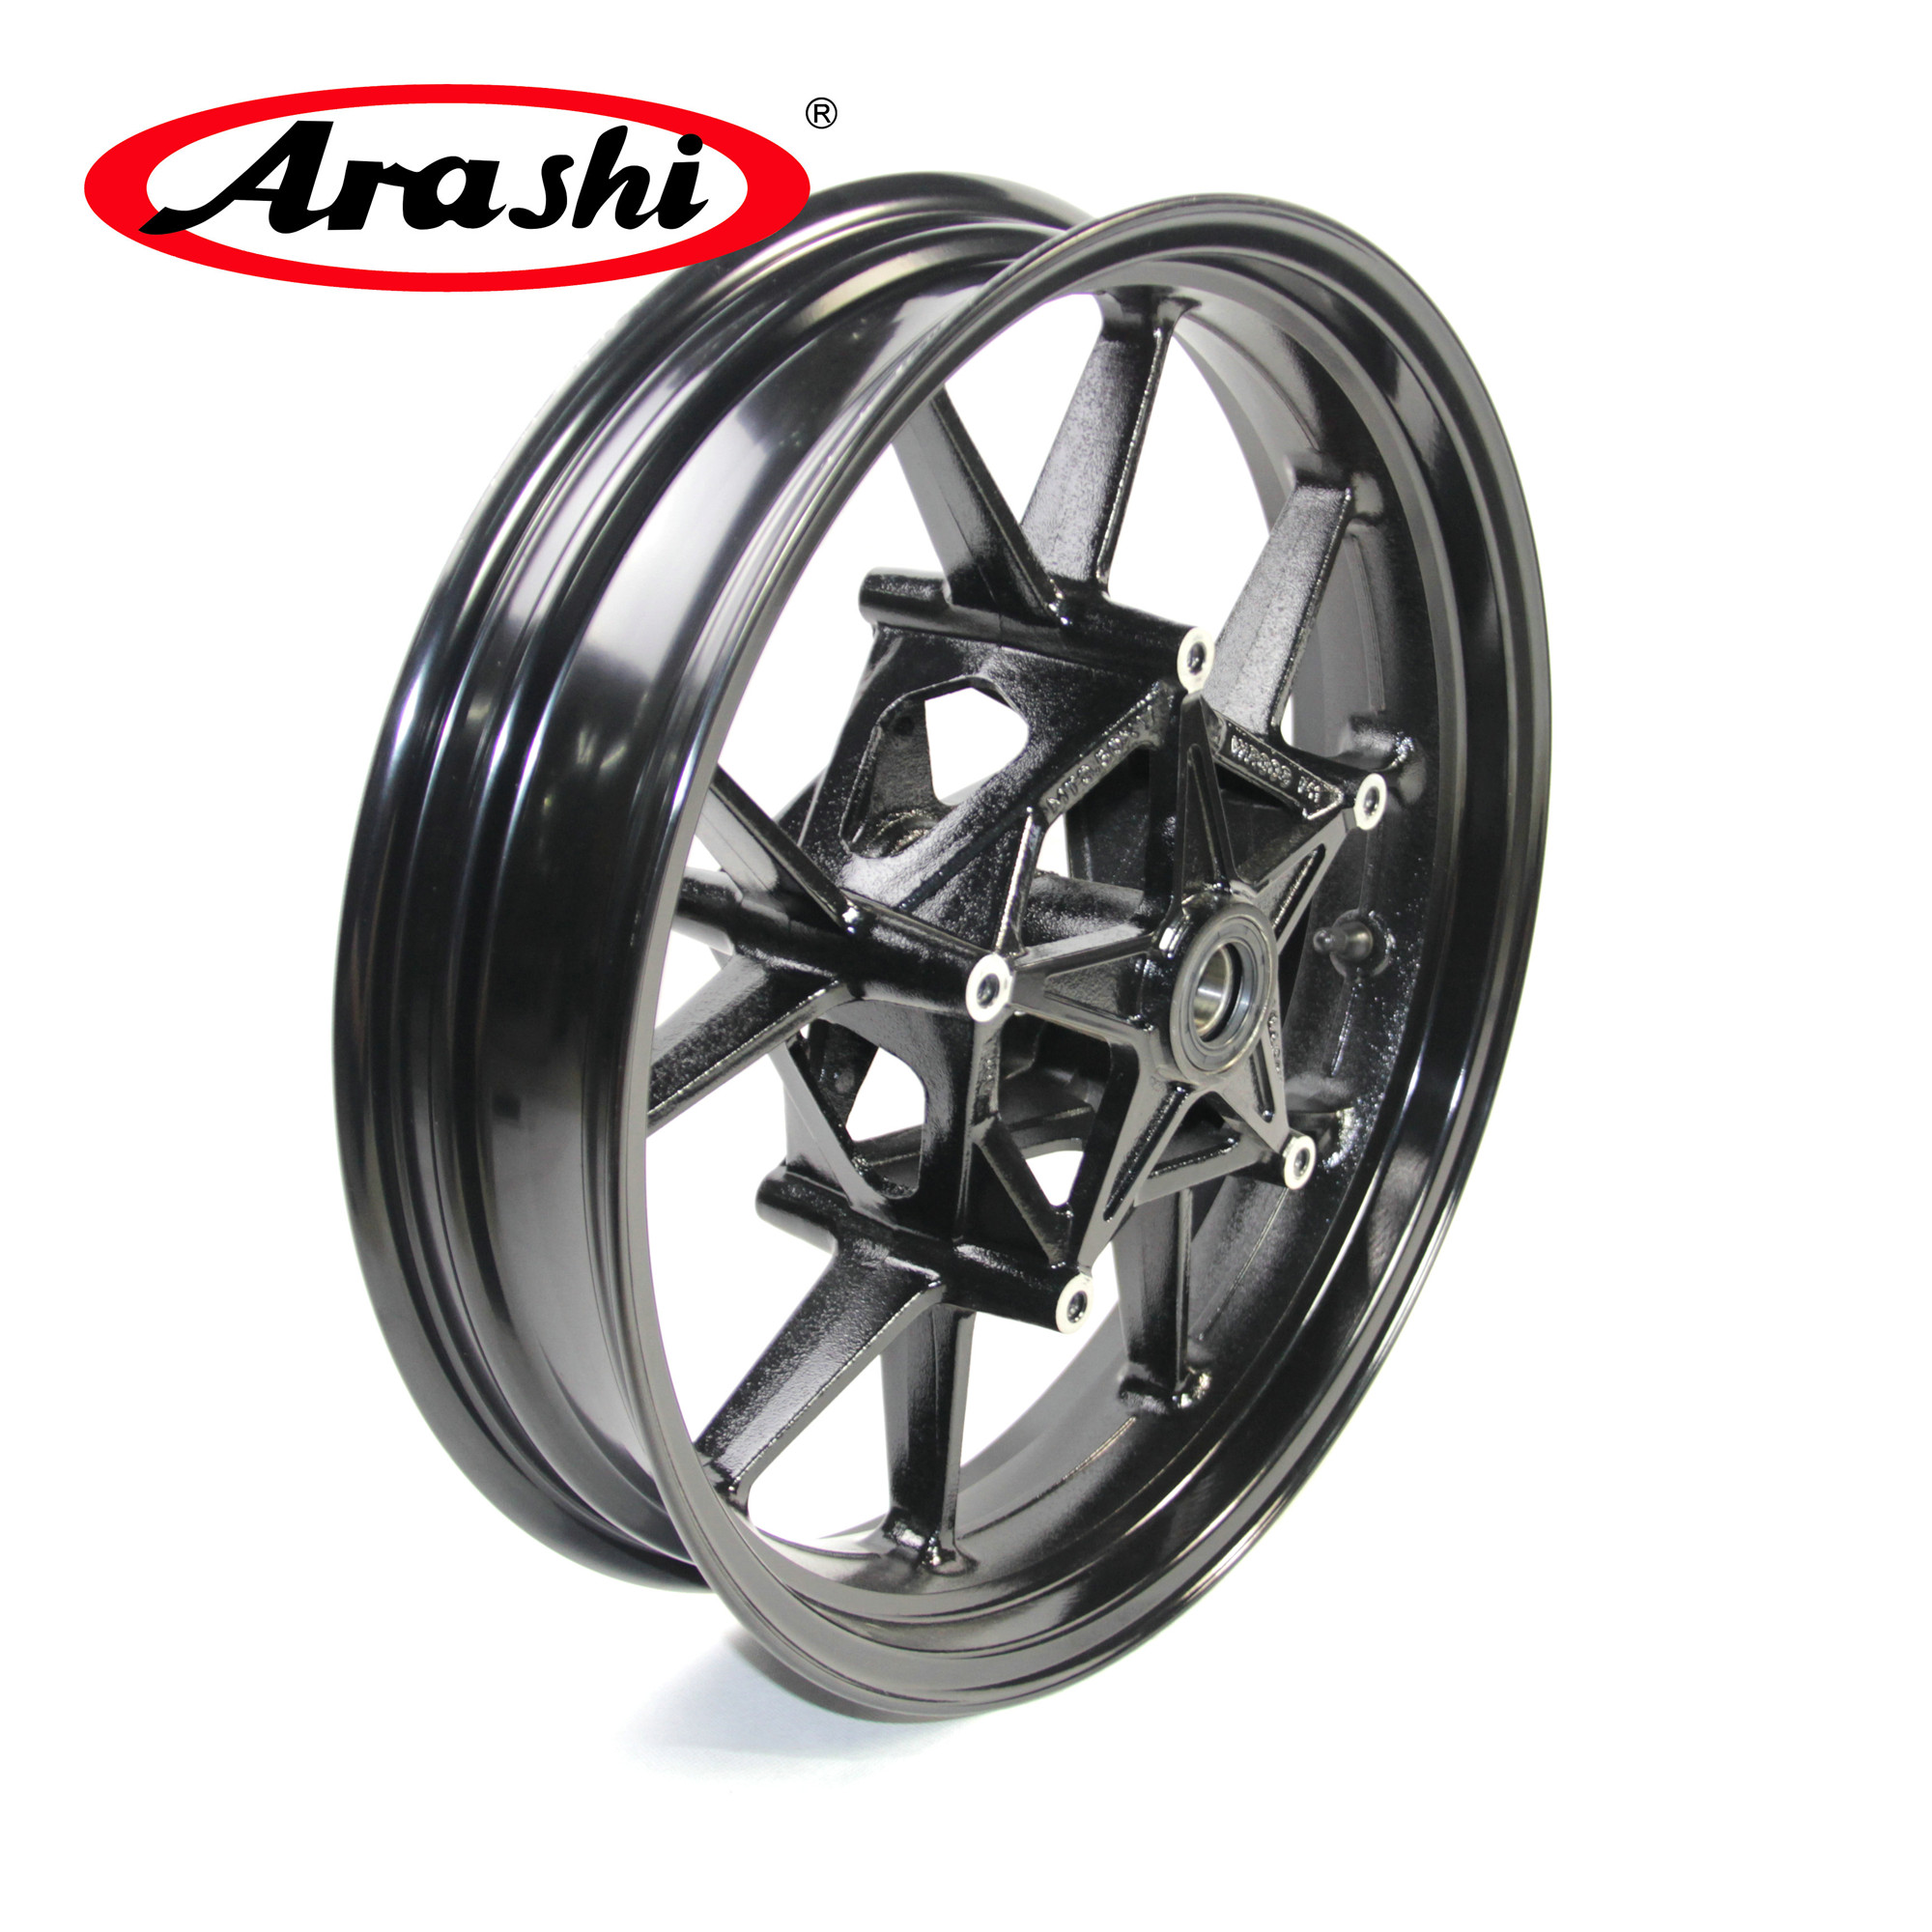 

Arashi Front Wheel Rim For Bmw S1000RR 2009 - 2015 2010 2011 2012 2013 2014 Motorcycle Parts CNC Aluminum S 1000 RR S1000 1000RR